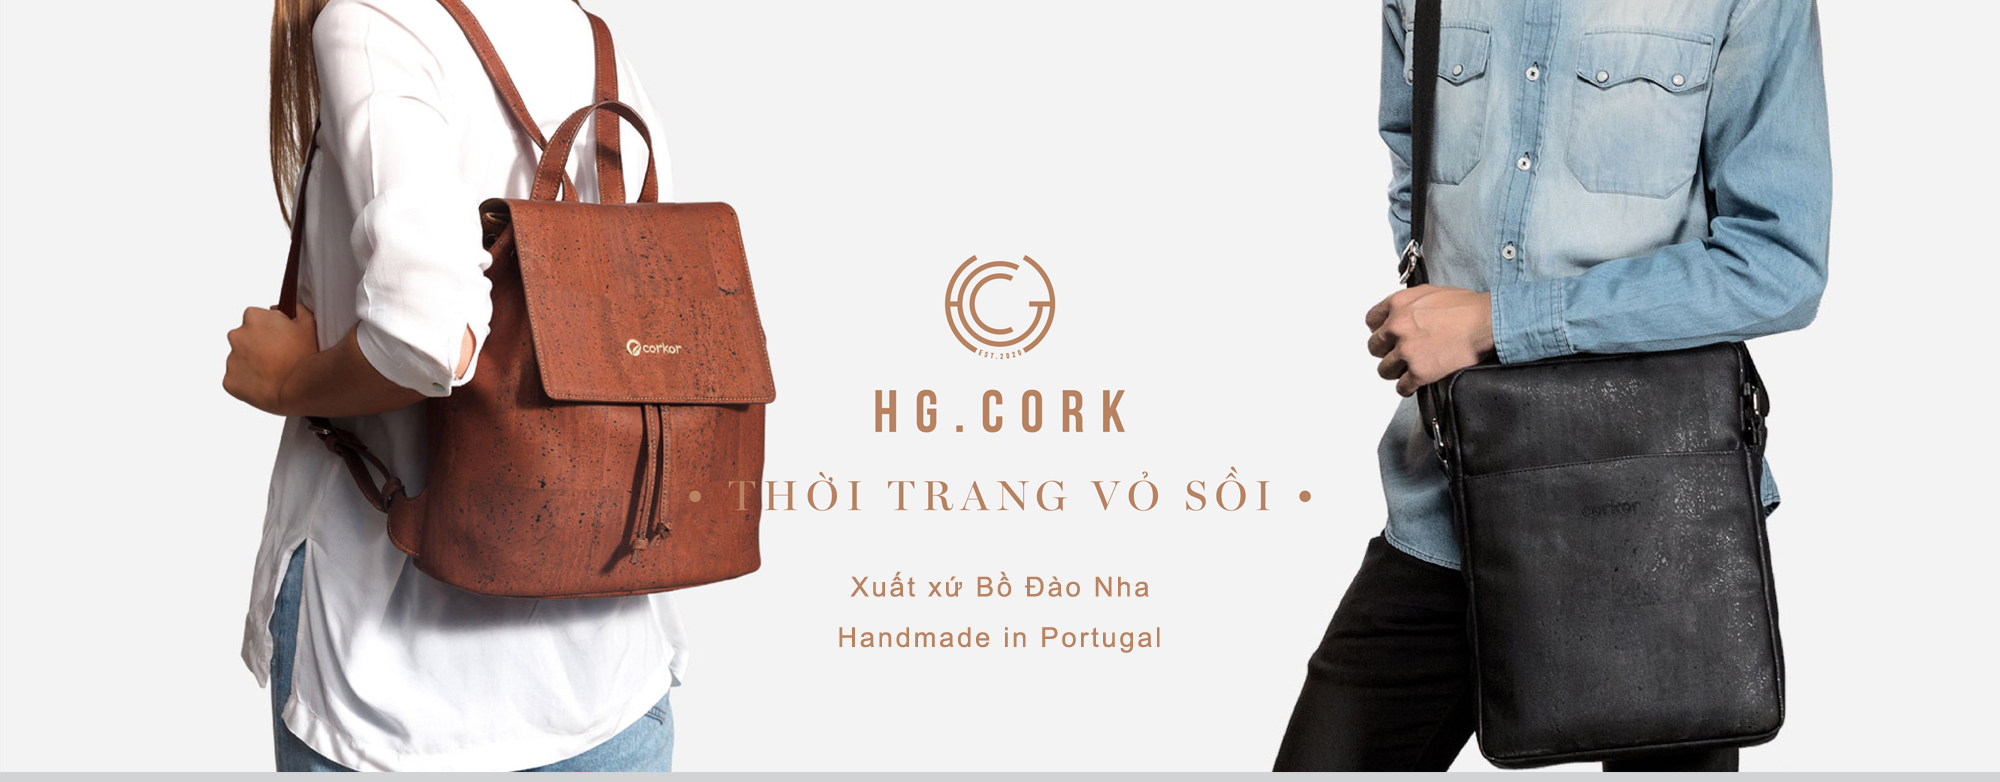 HG.cork - Thời trang vỏ sồi Bồ Đào Nha